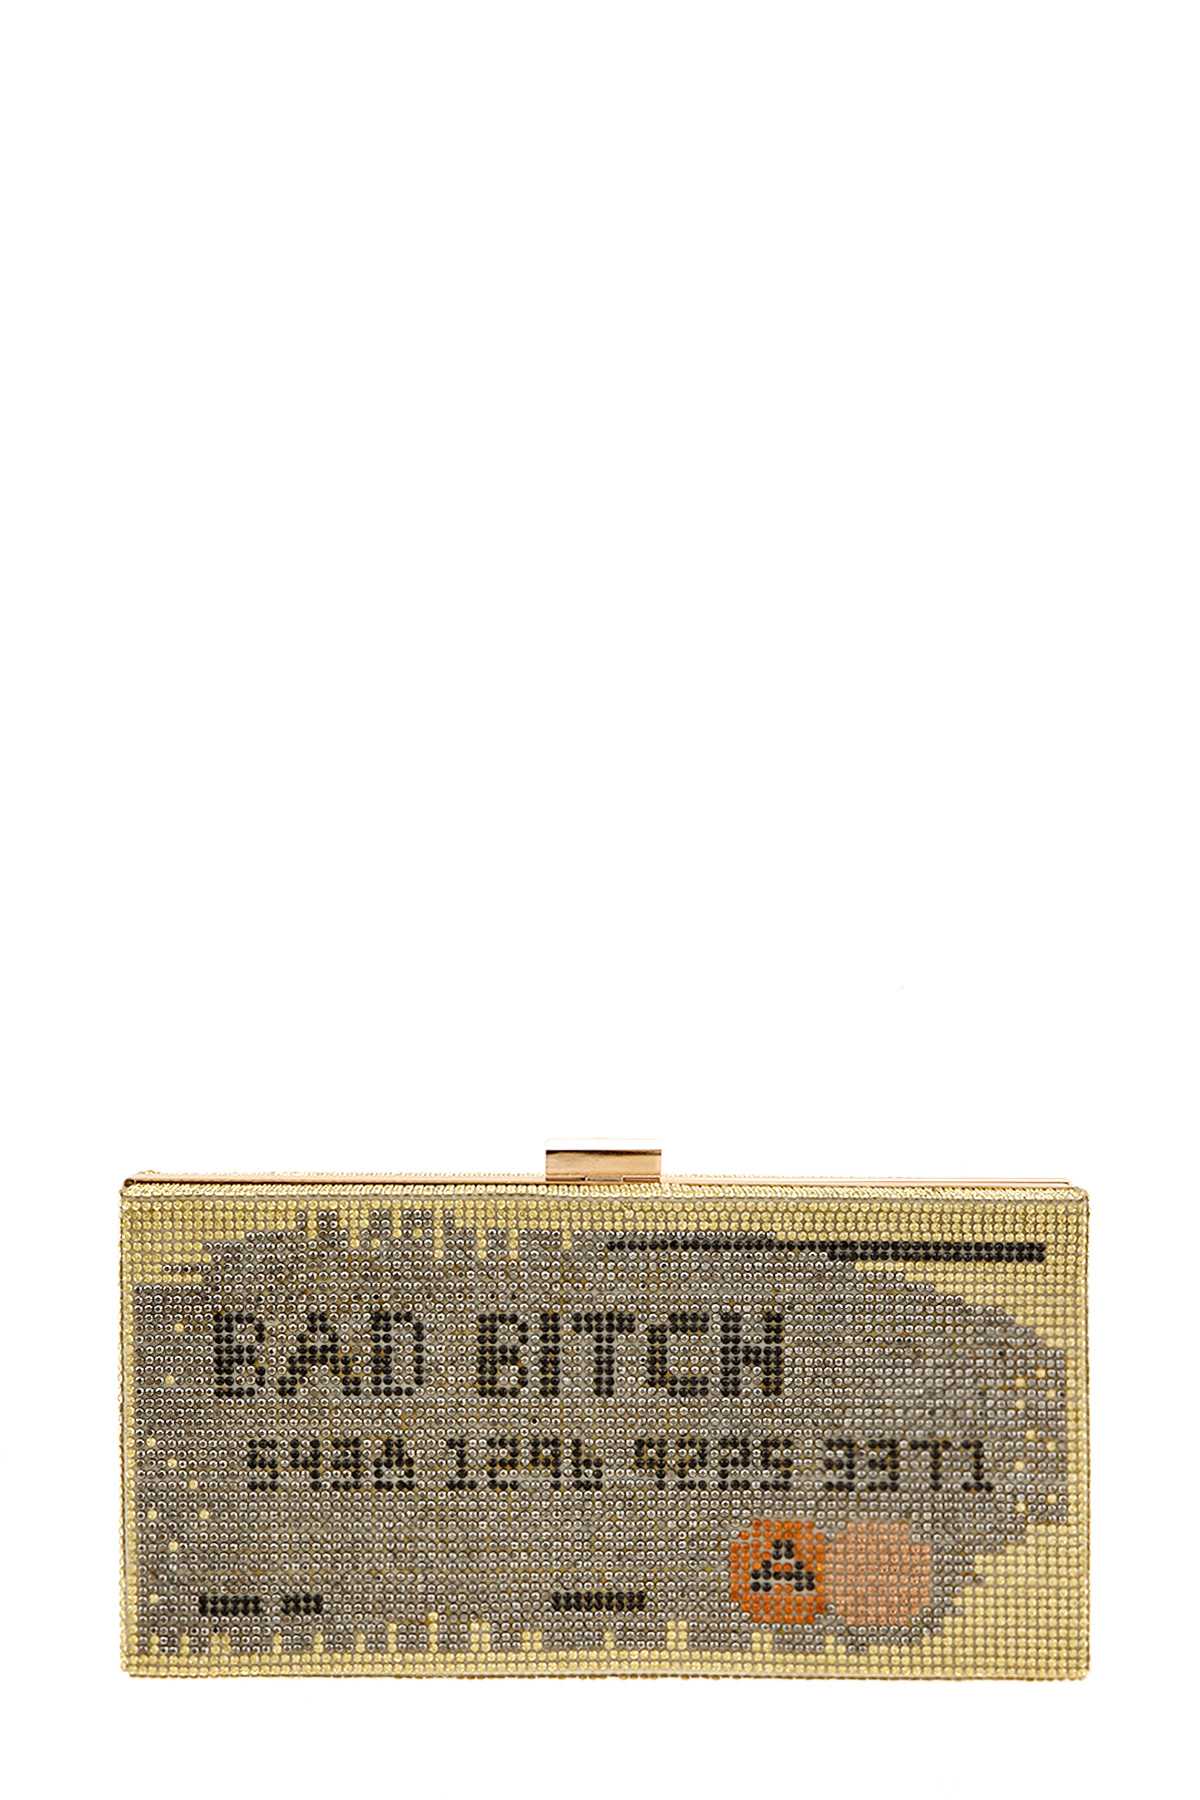 Bad Bitch Full Rhinestone Clutch Bag